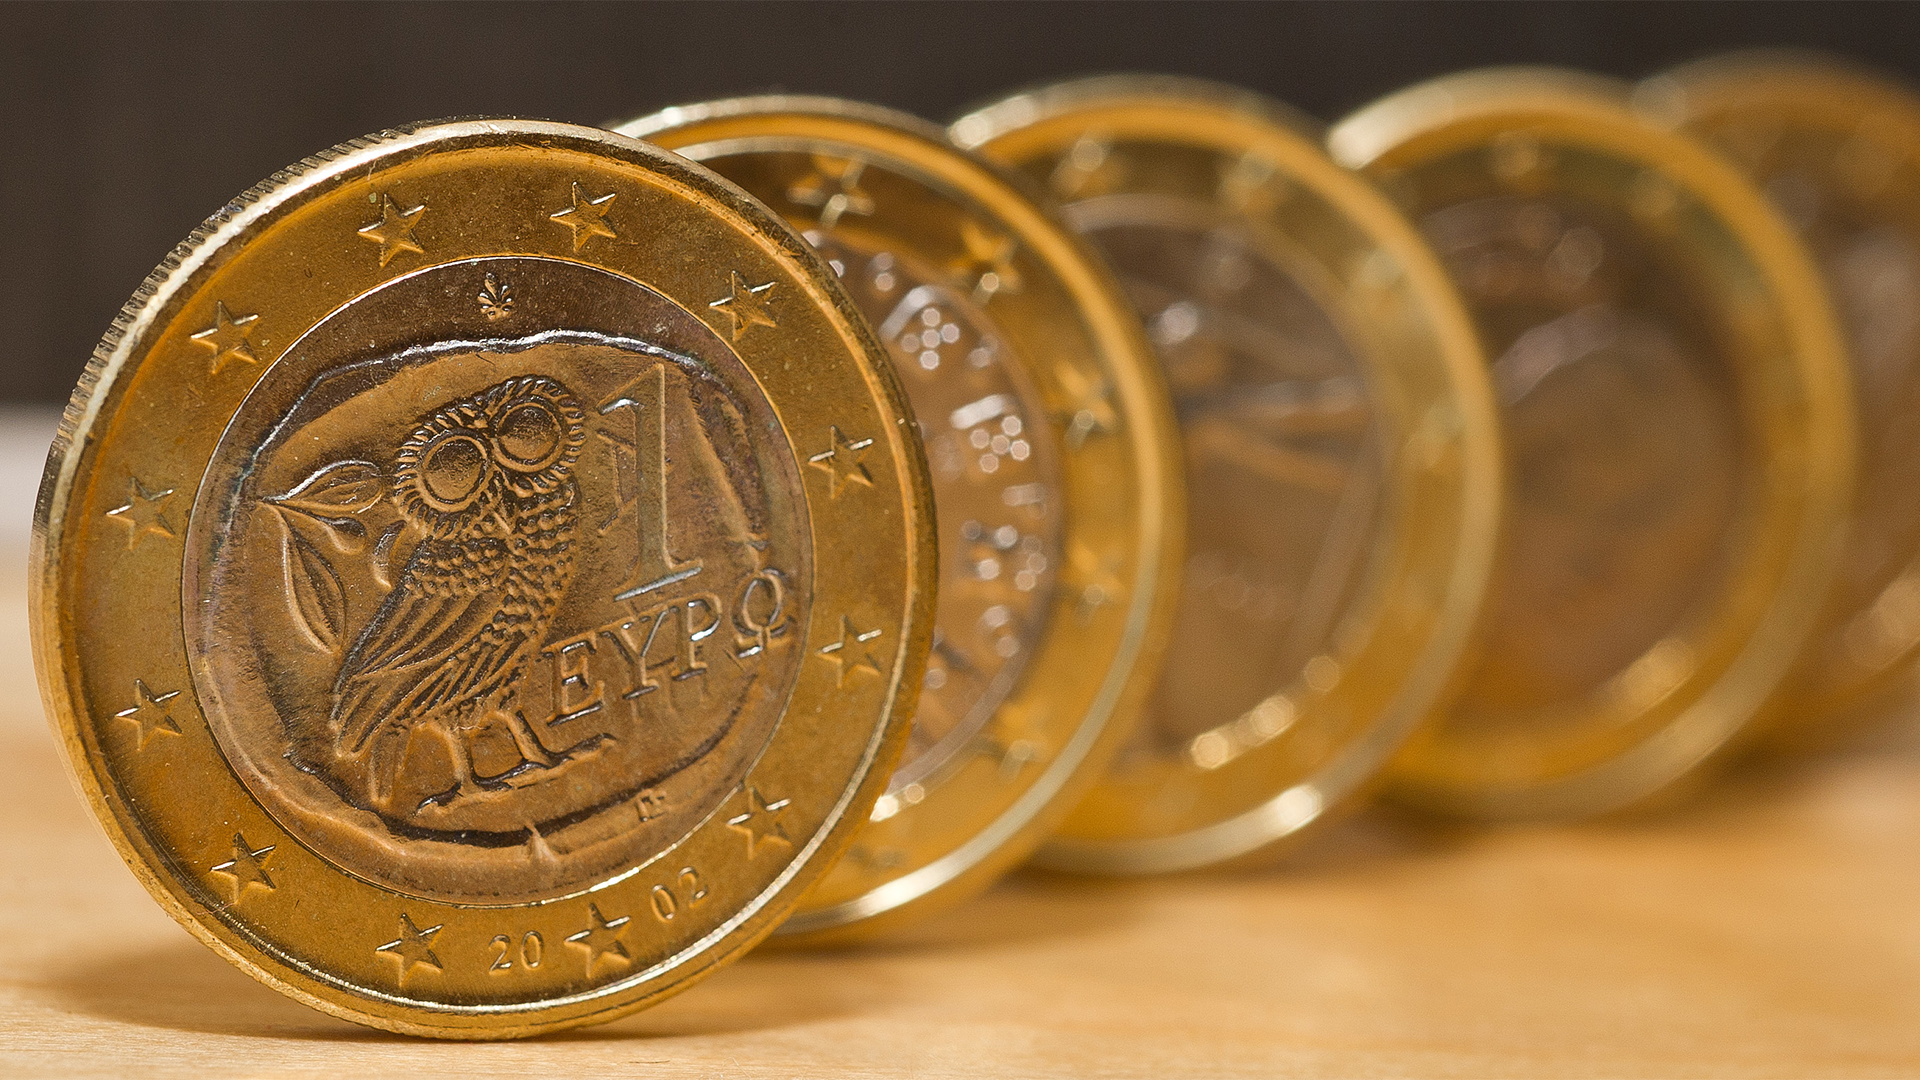 Euromünzen Griechenland | picture alliance / ZB